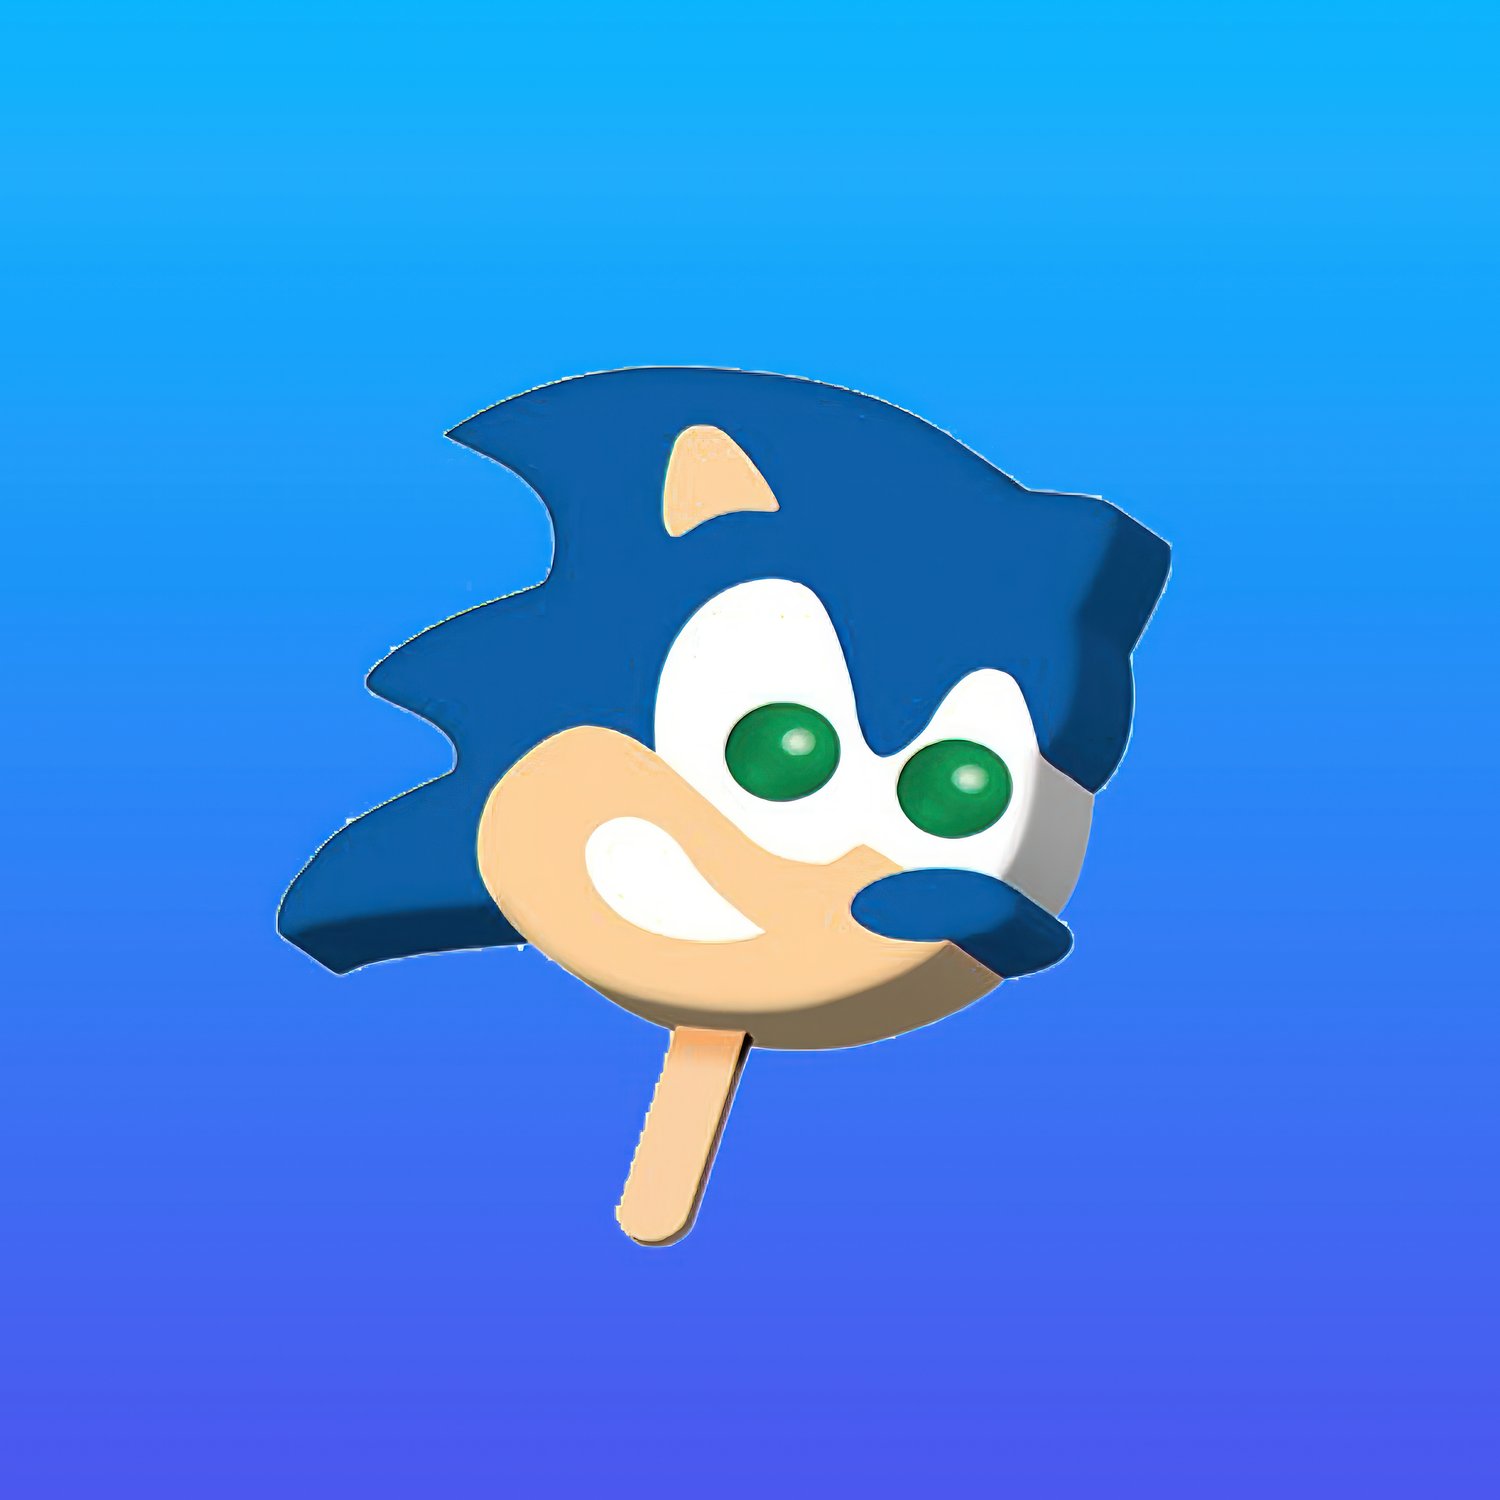 Sonic the Hedgehog Ice Cream — OC Ice Cream